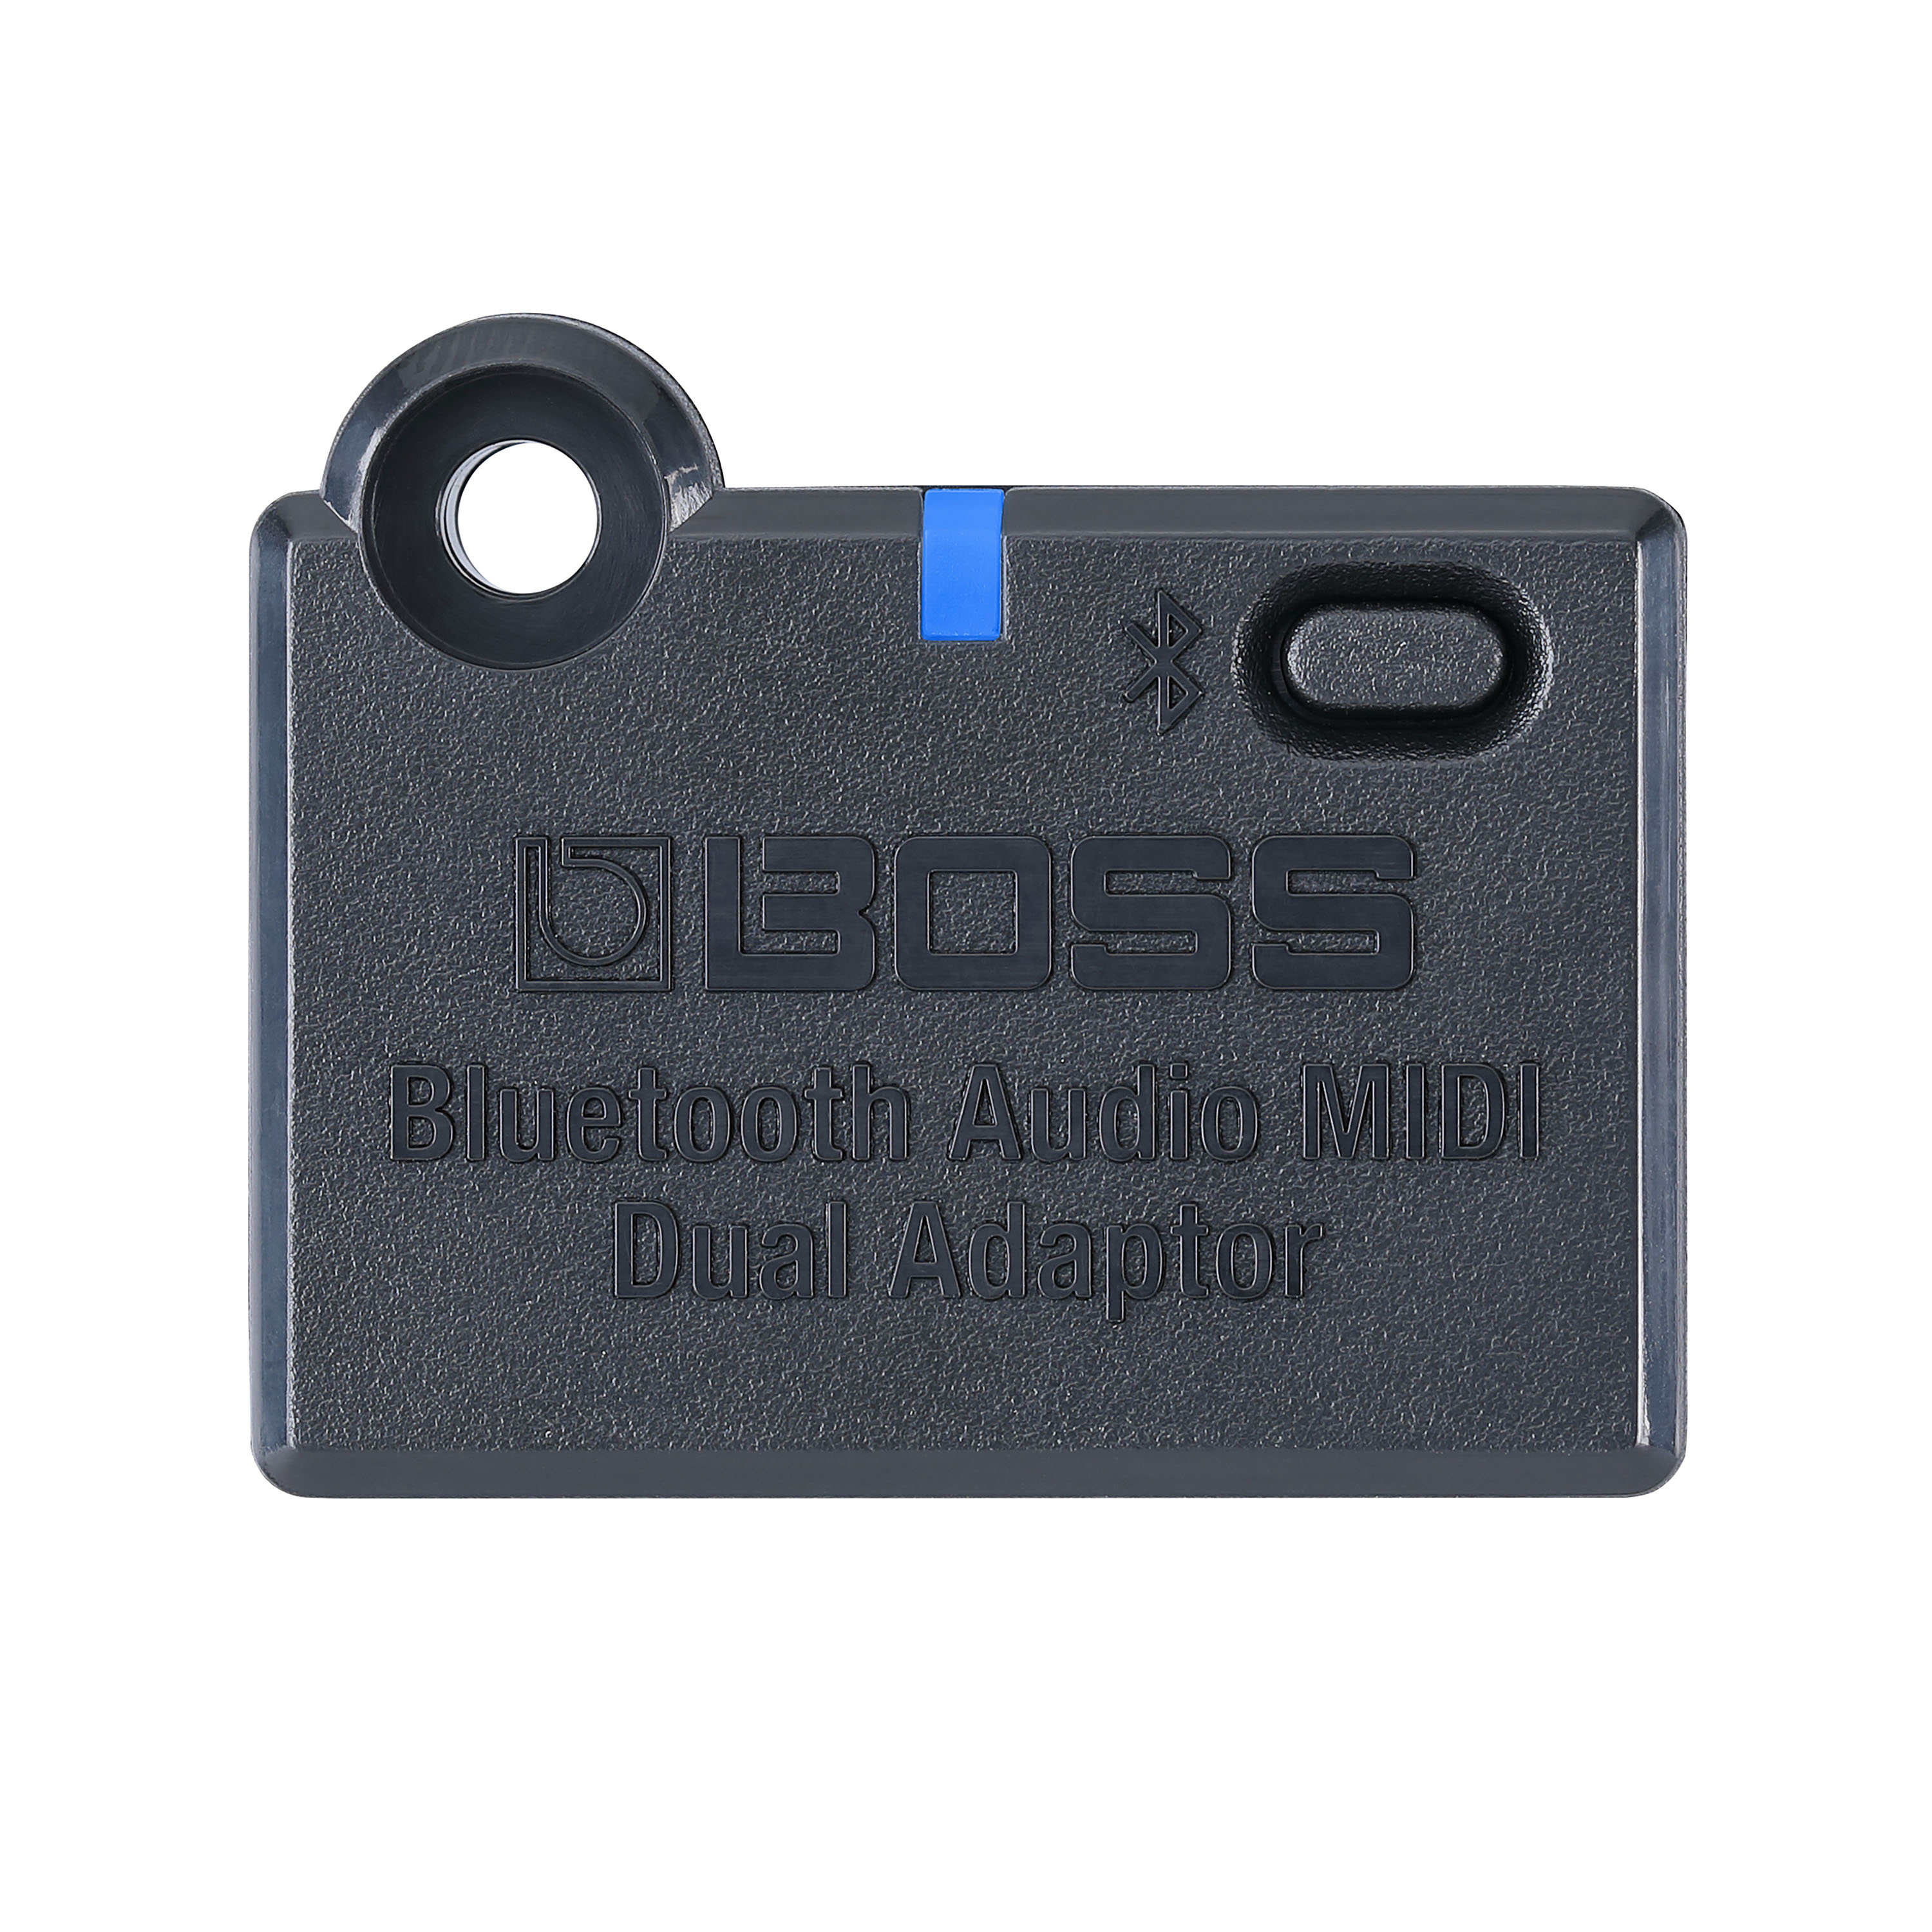 Boss Bluetooth Audio Adaptator - Zubehör für Effektgeräte - Variation 1